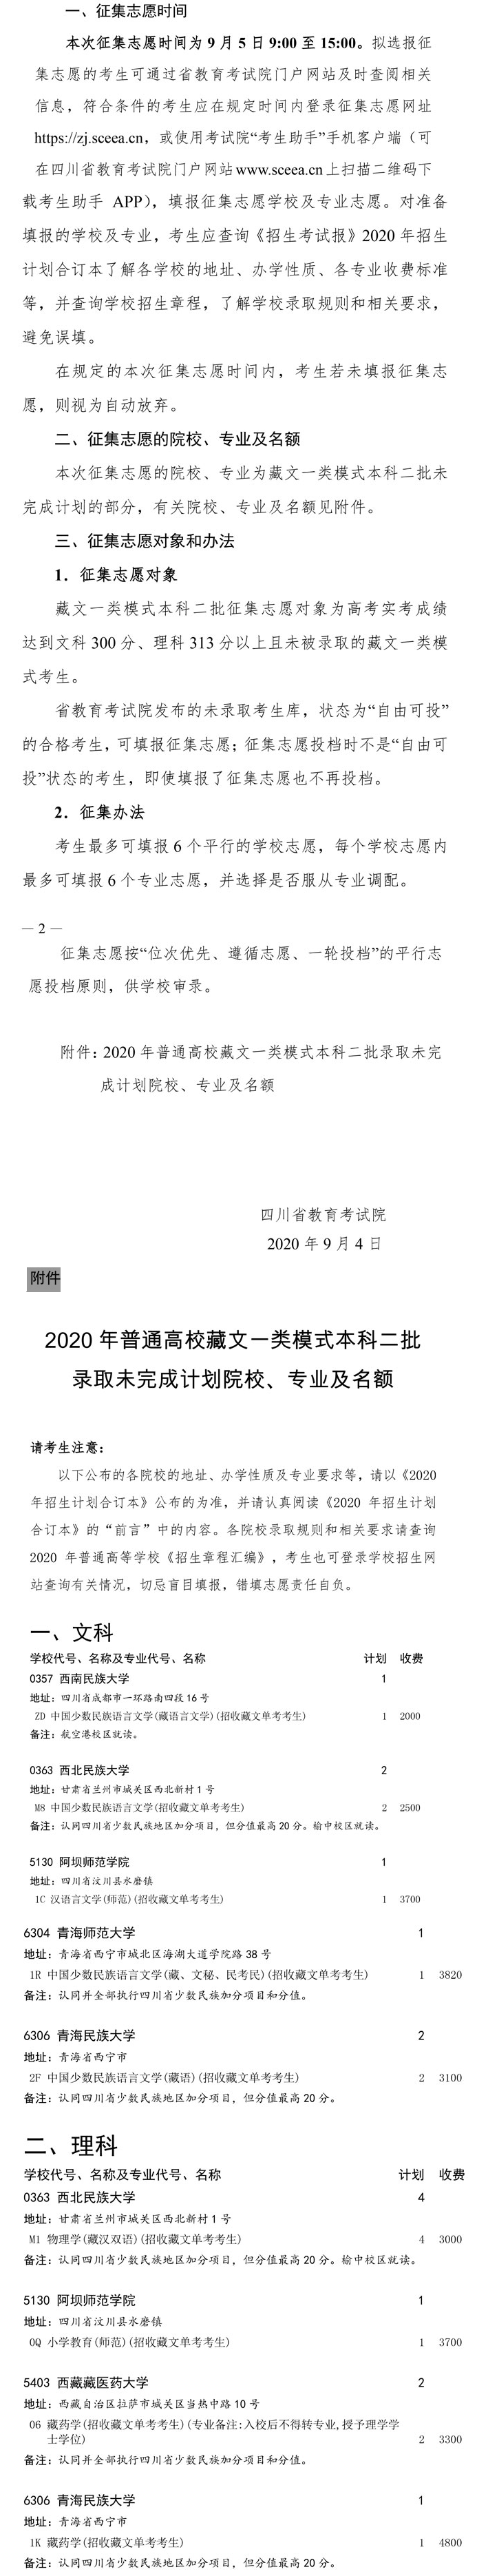 2020四川藏文二本征集志愿时间及学校